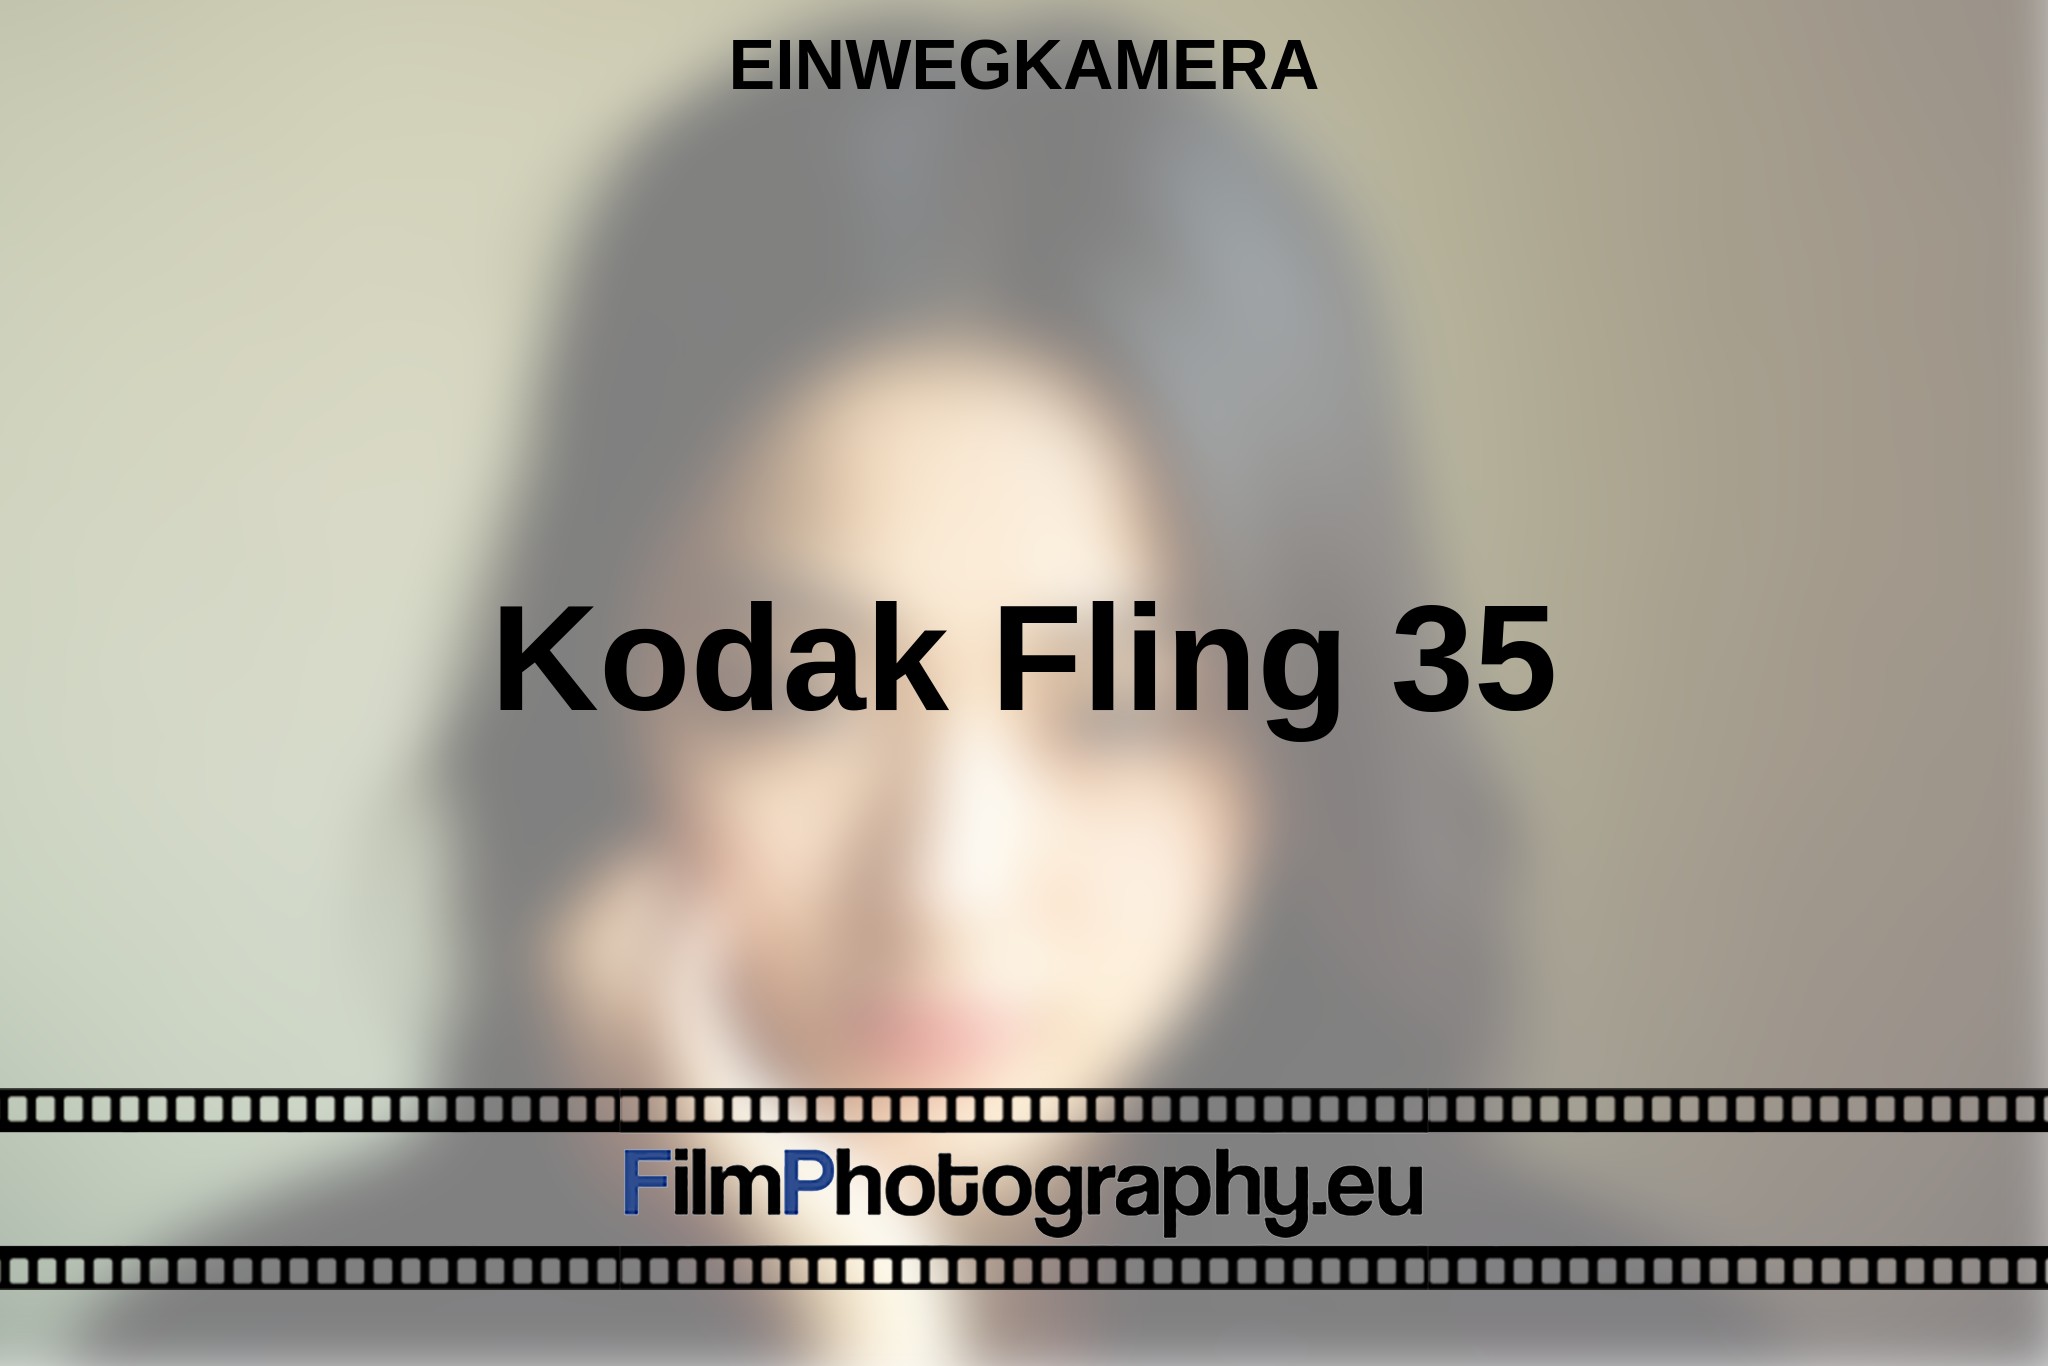 kodak-fling-35-einwegkamera-bnv.jpg